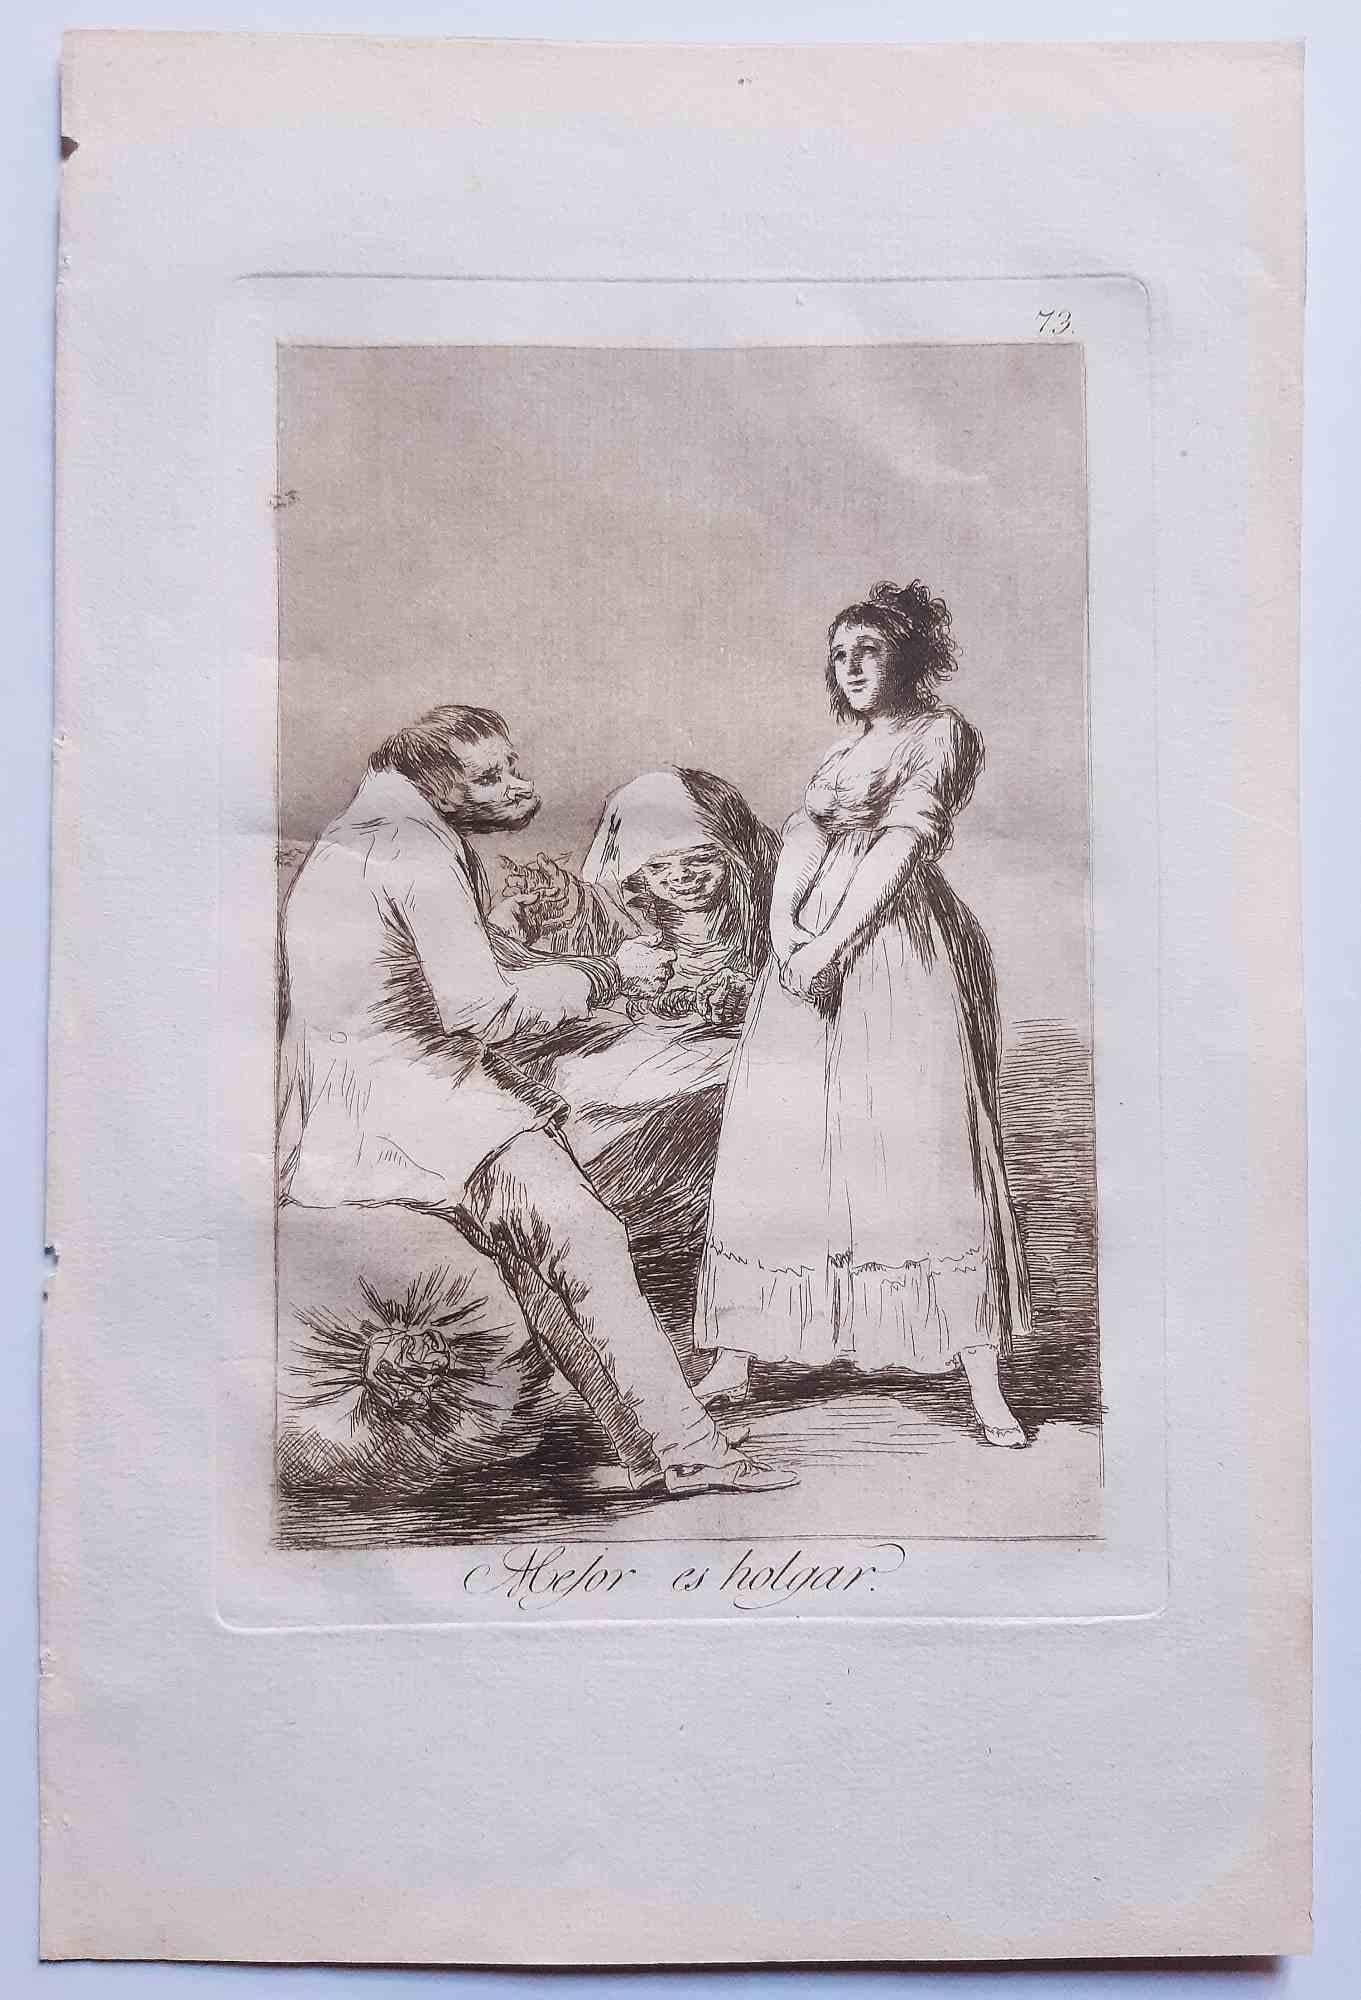 Mejor es holgar von Los Caprichos ist ein Original  Kunstwerk des Künstlers Francisco Goya, das 1799 zum ersten Mal veröffentlicht wurde.

Radierung und Aquatinta auf Papier.

Die Radierung ist Teil der Erstausgabe von "Los Caprichos", die 1799 von